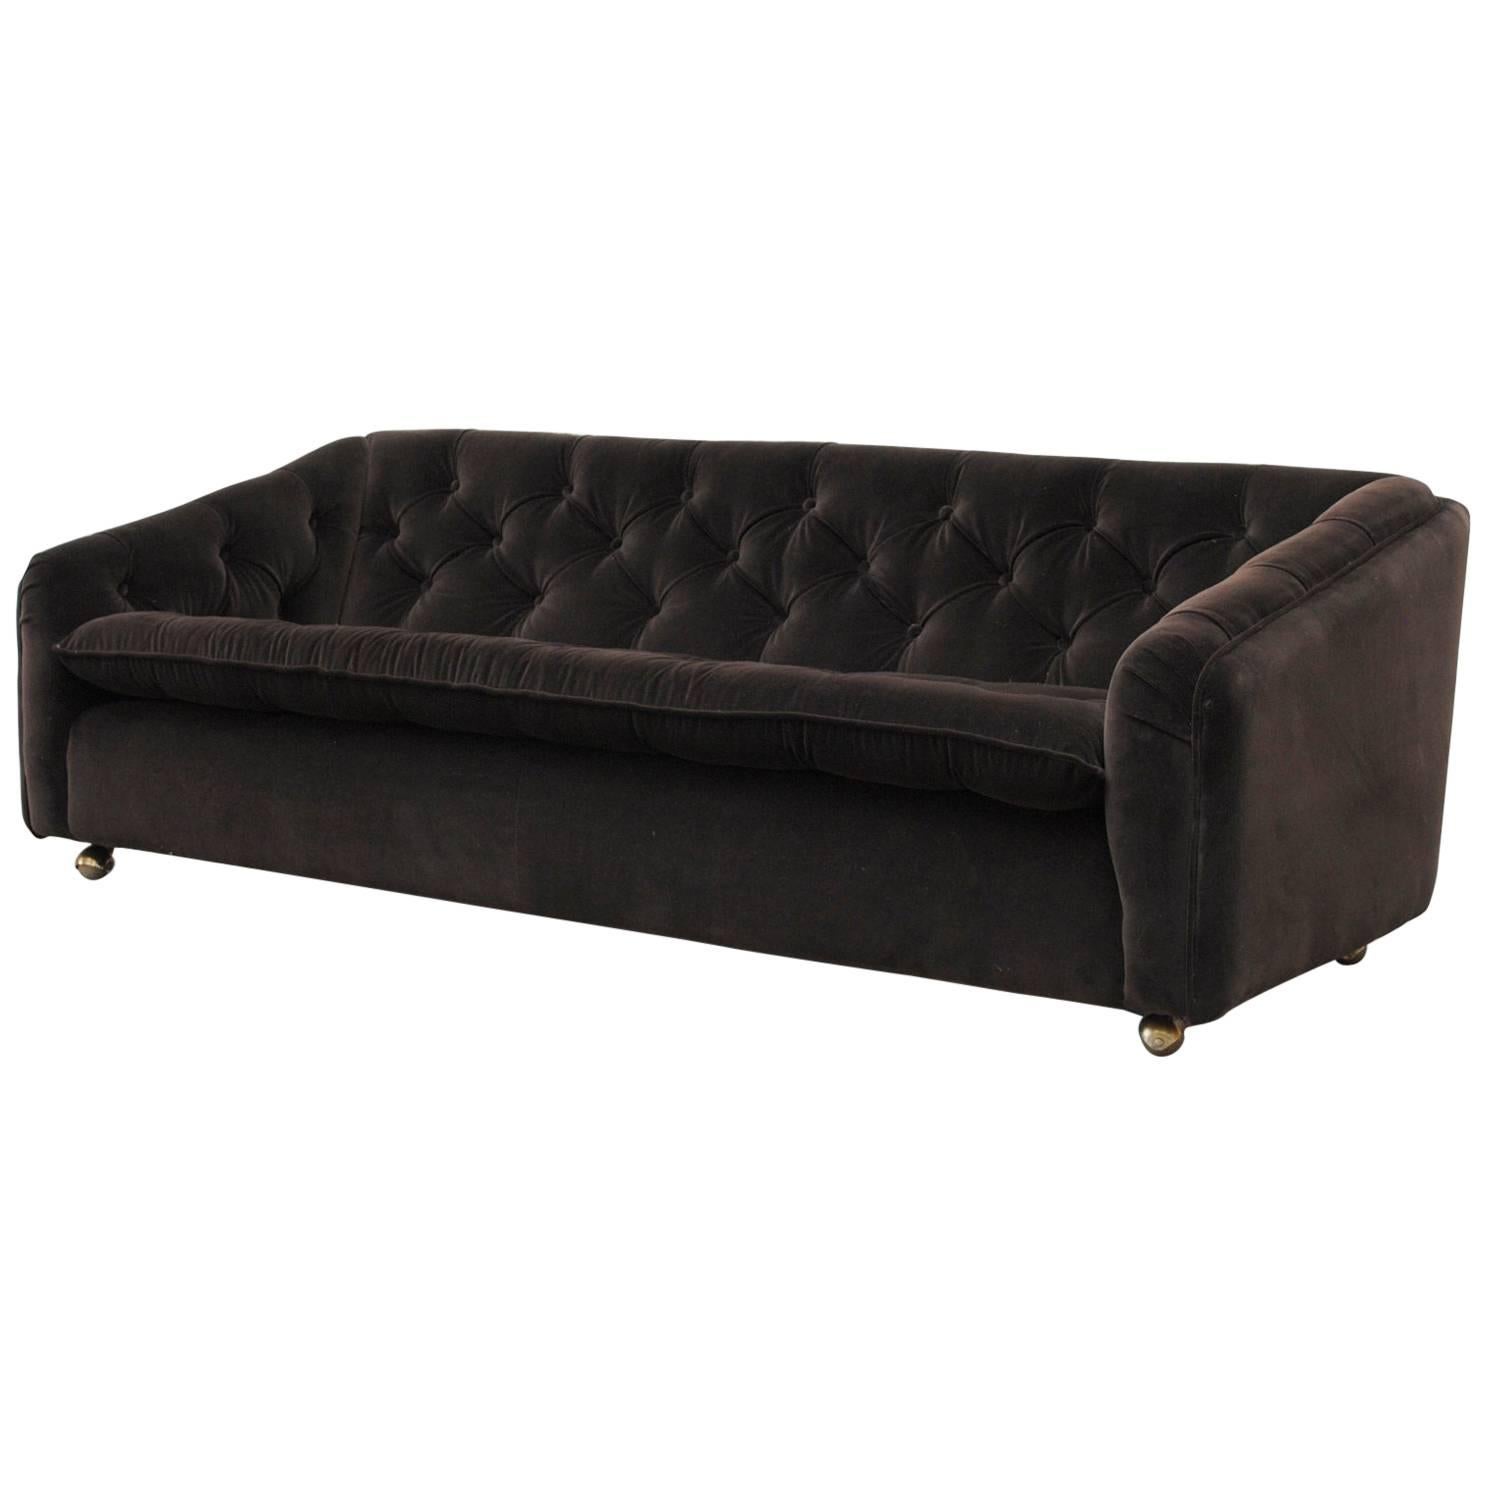 Geoffrey Harcourt Dark Grey Velvet Artifort Three-Seat Sofa